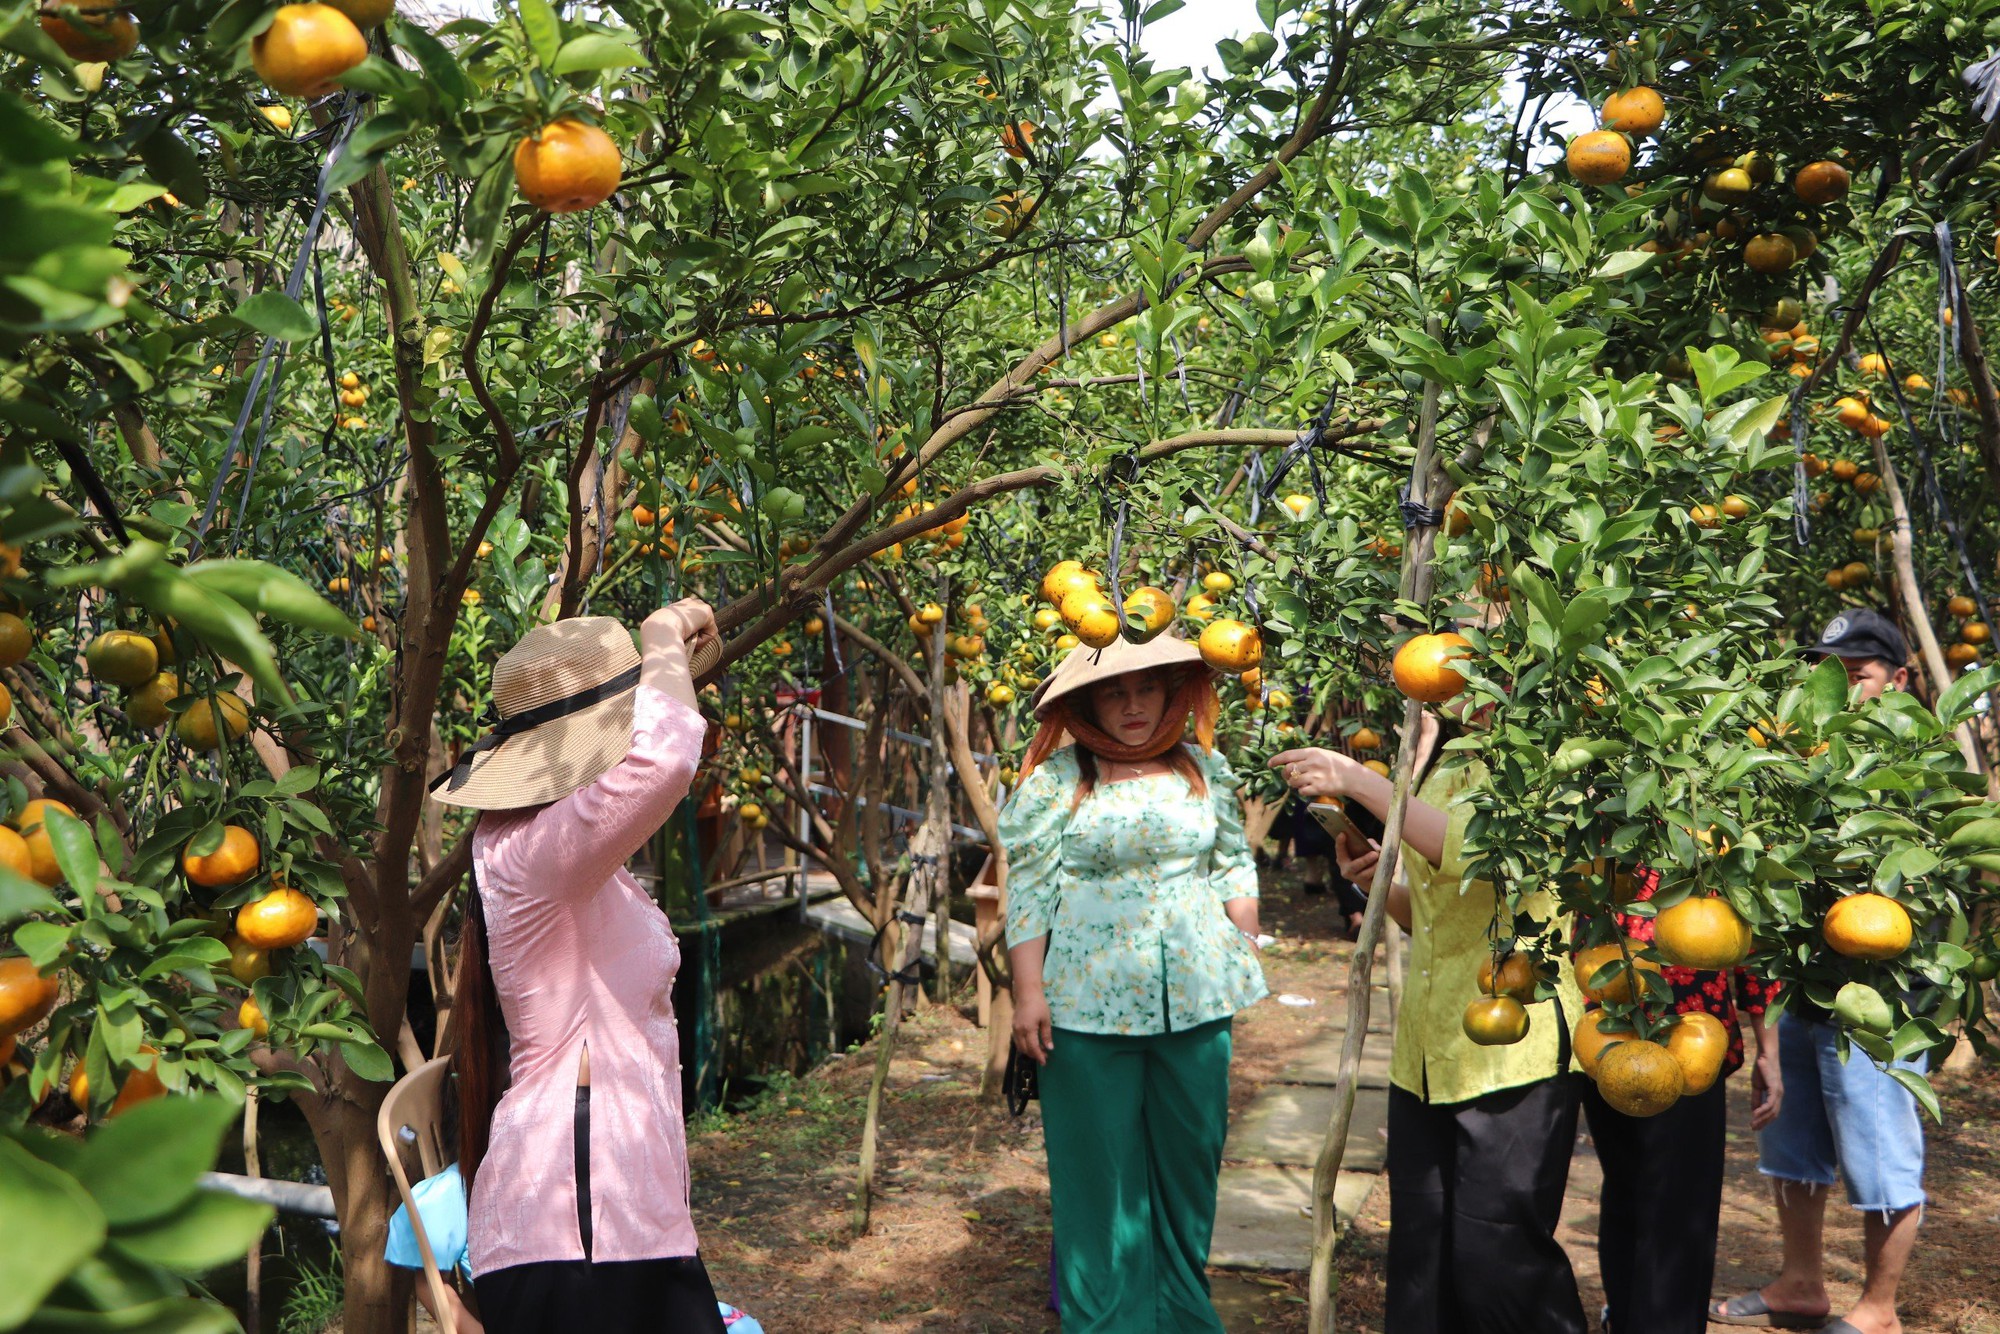 Quýt hồng Lai Vung chín vàng ươm, chủ vườn mở thêm dịch vụ tham quan- Ảnh 2.